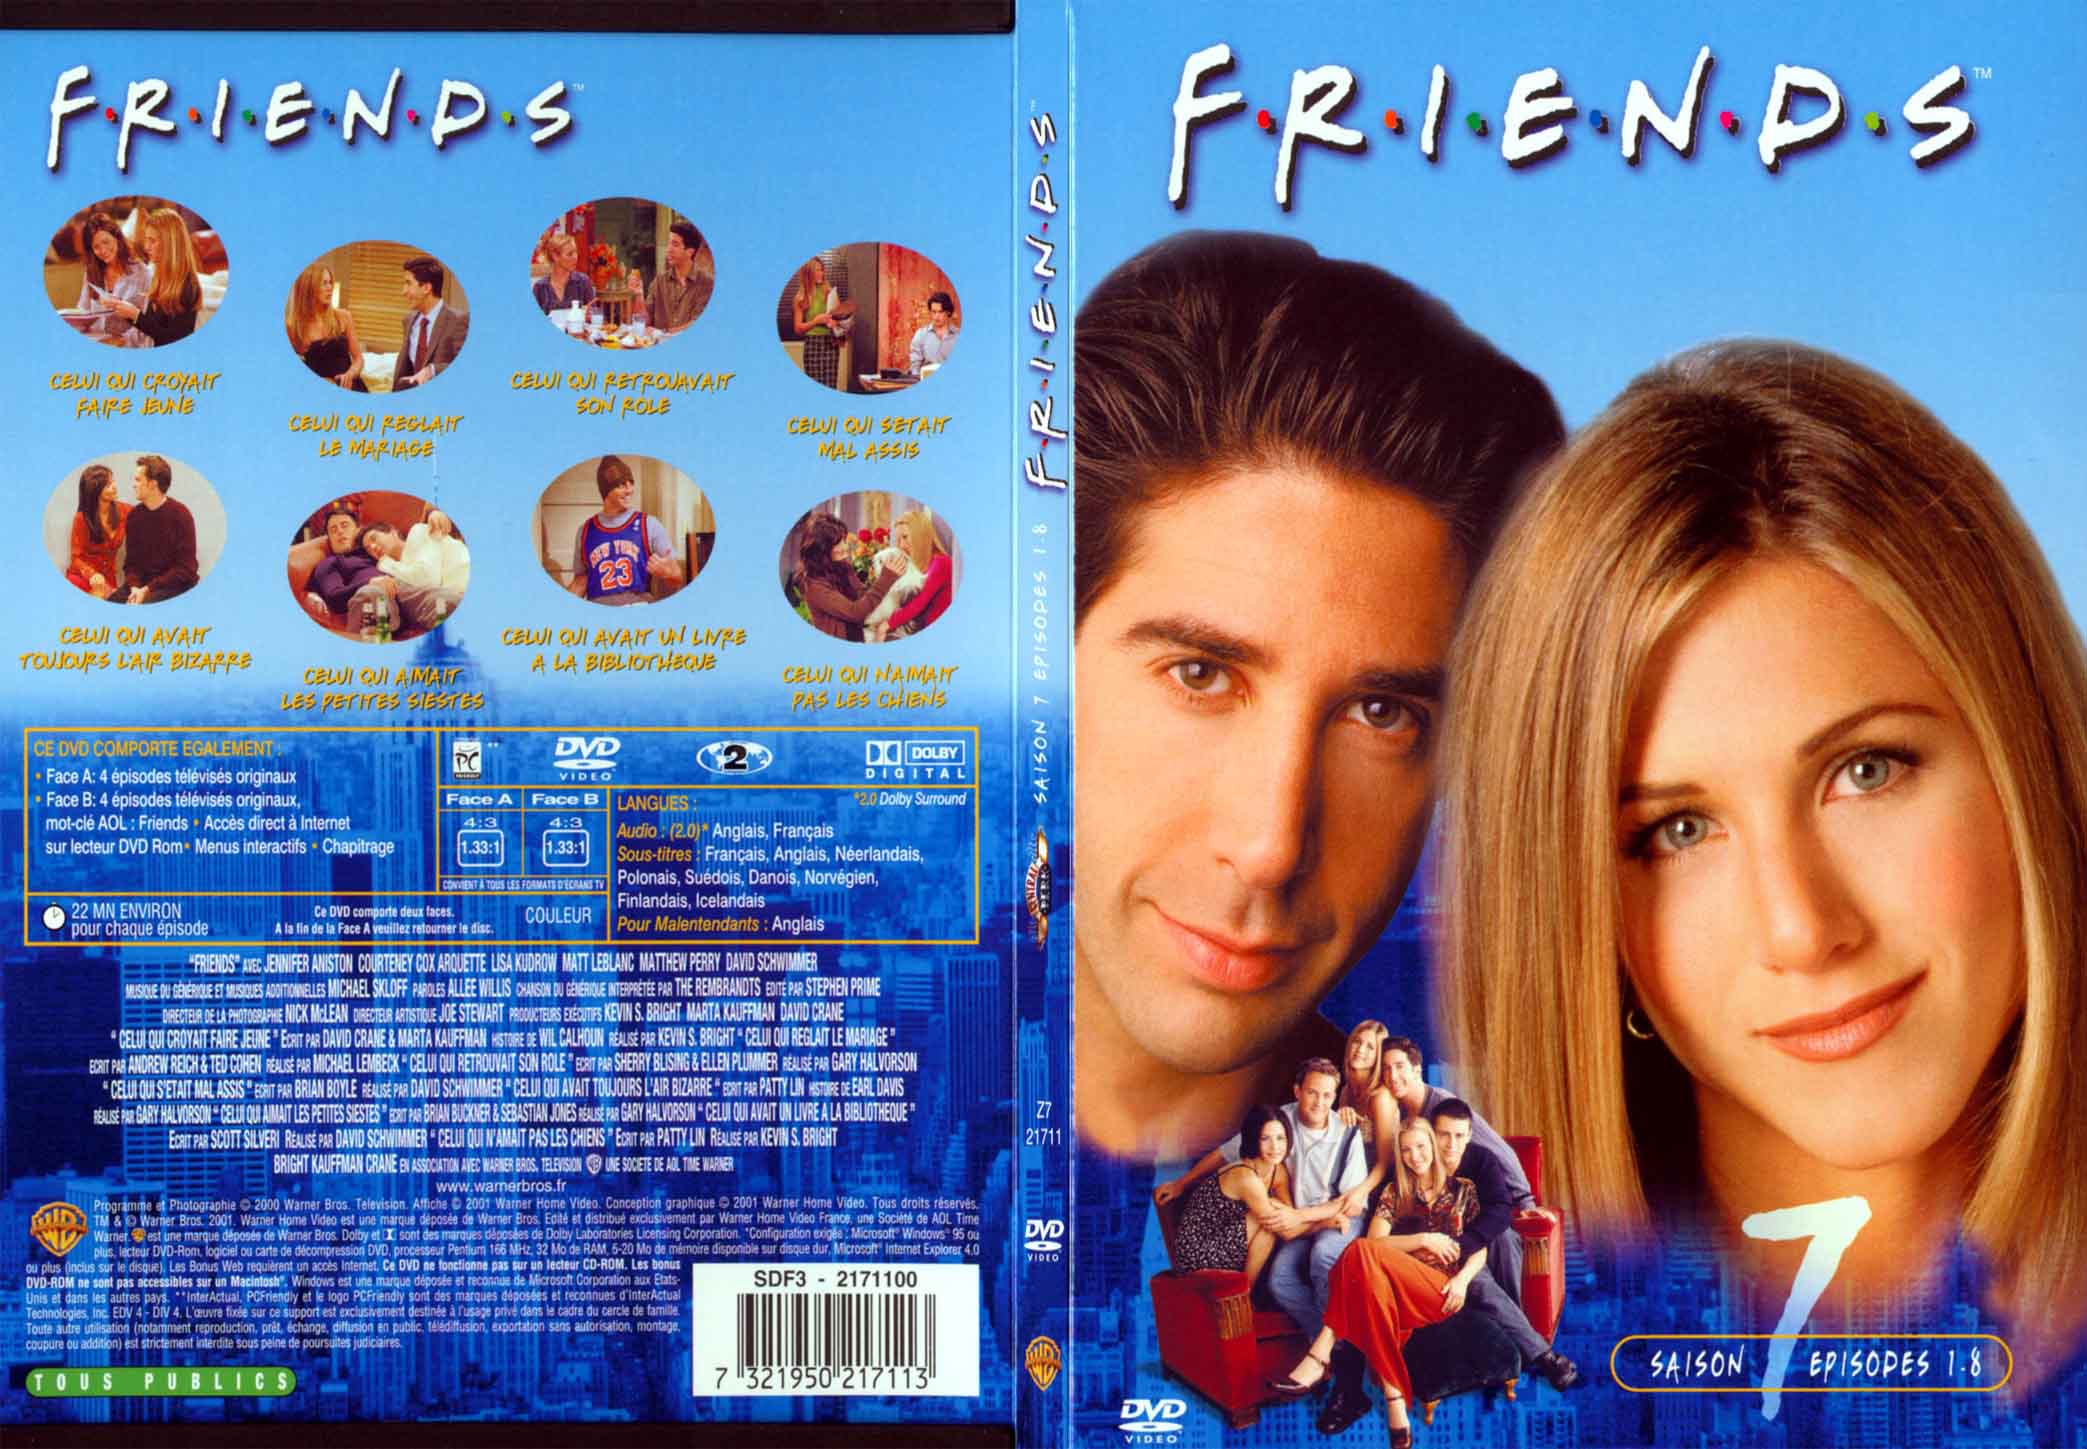 Jaquette DVD Friends saison 7 dvd 1 - SLIM